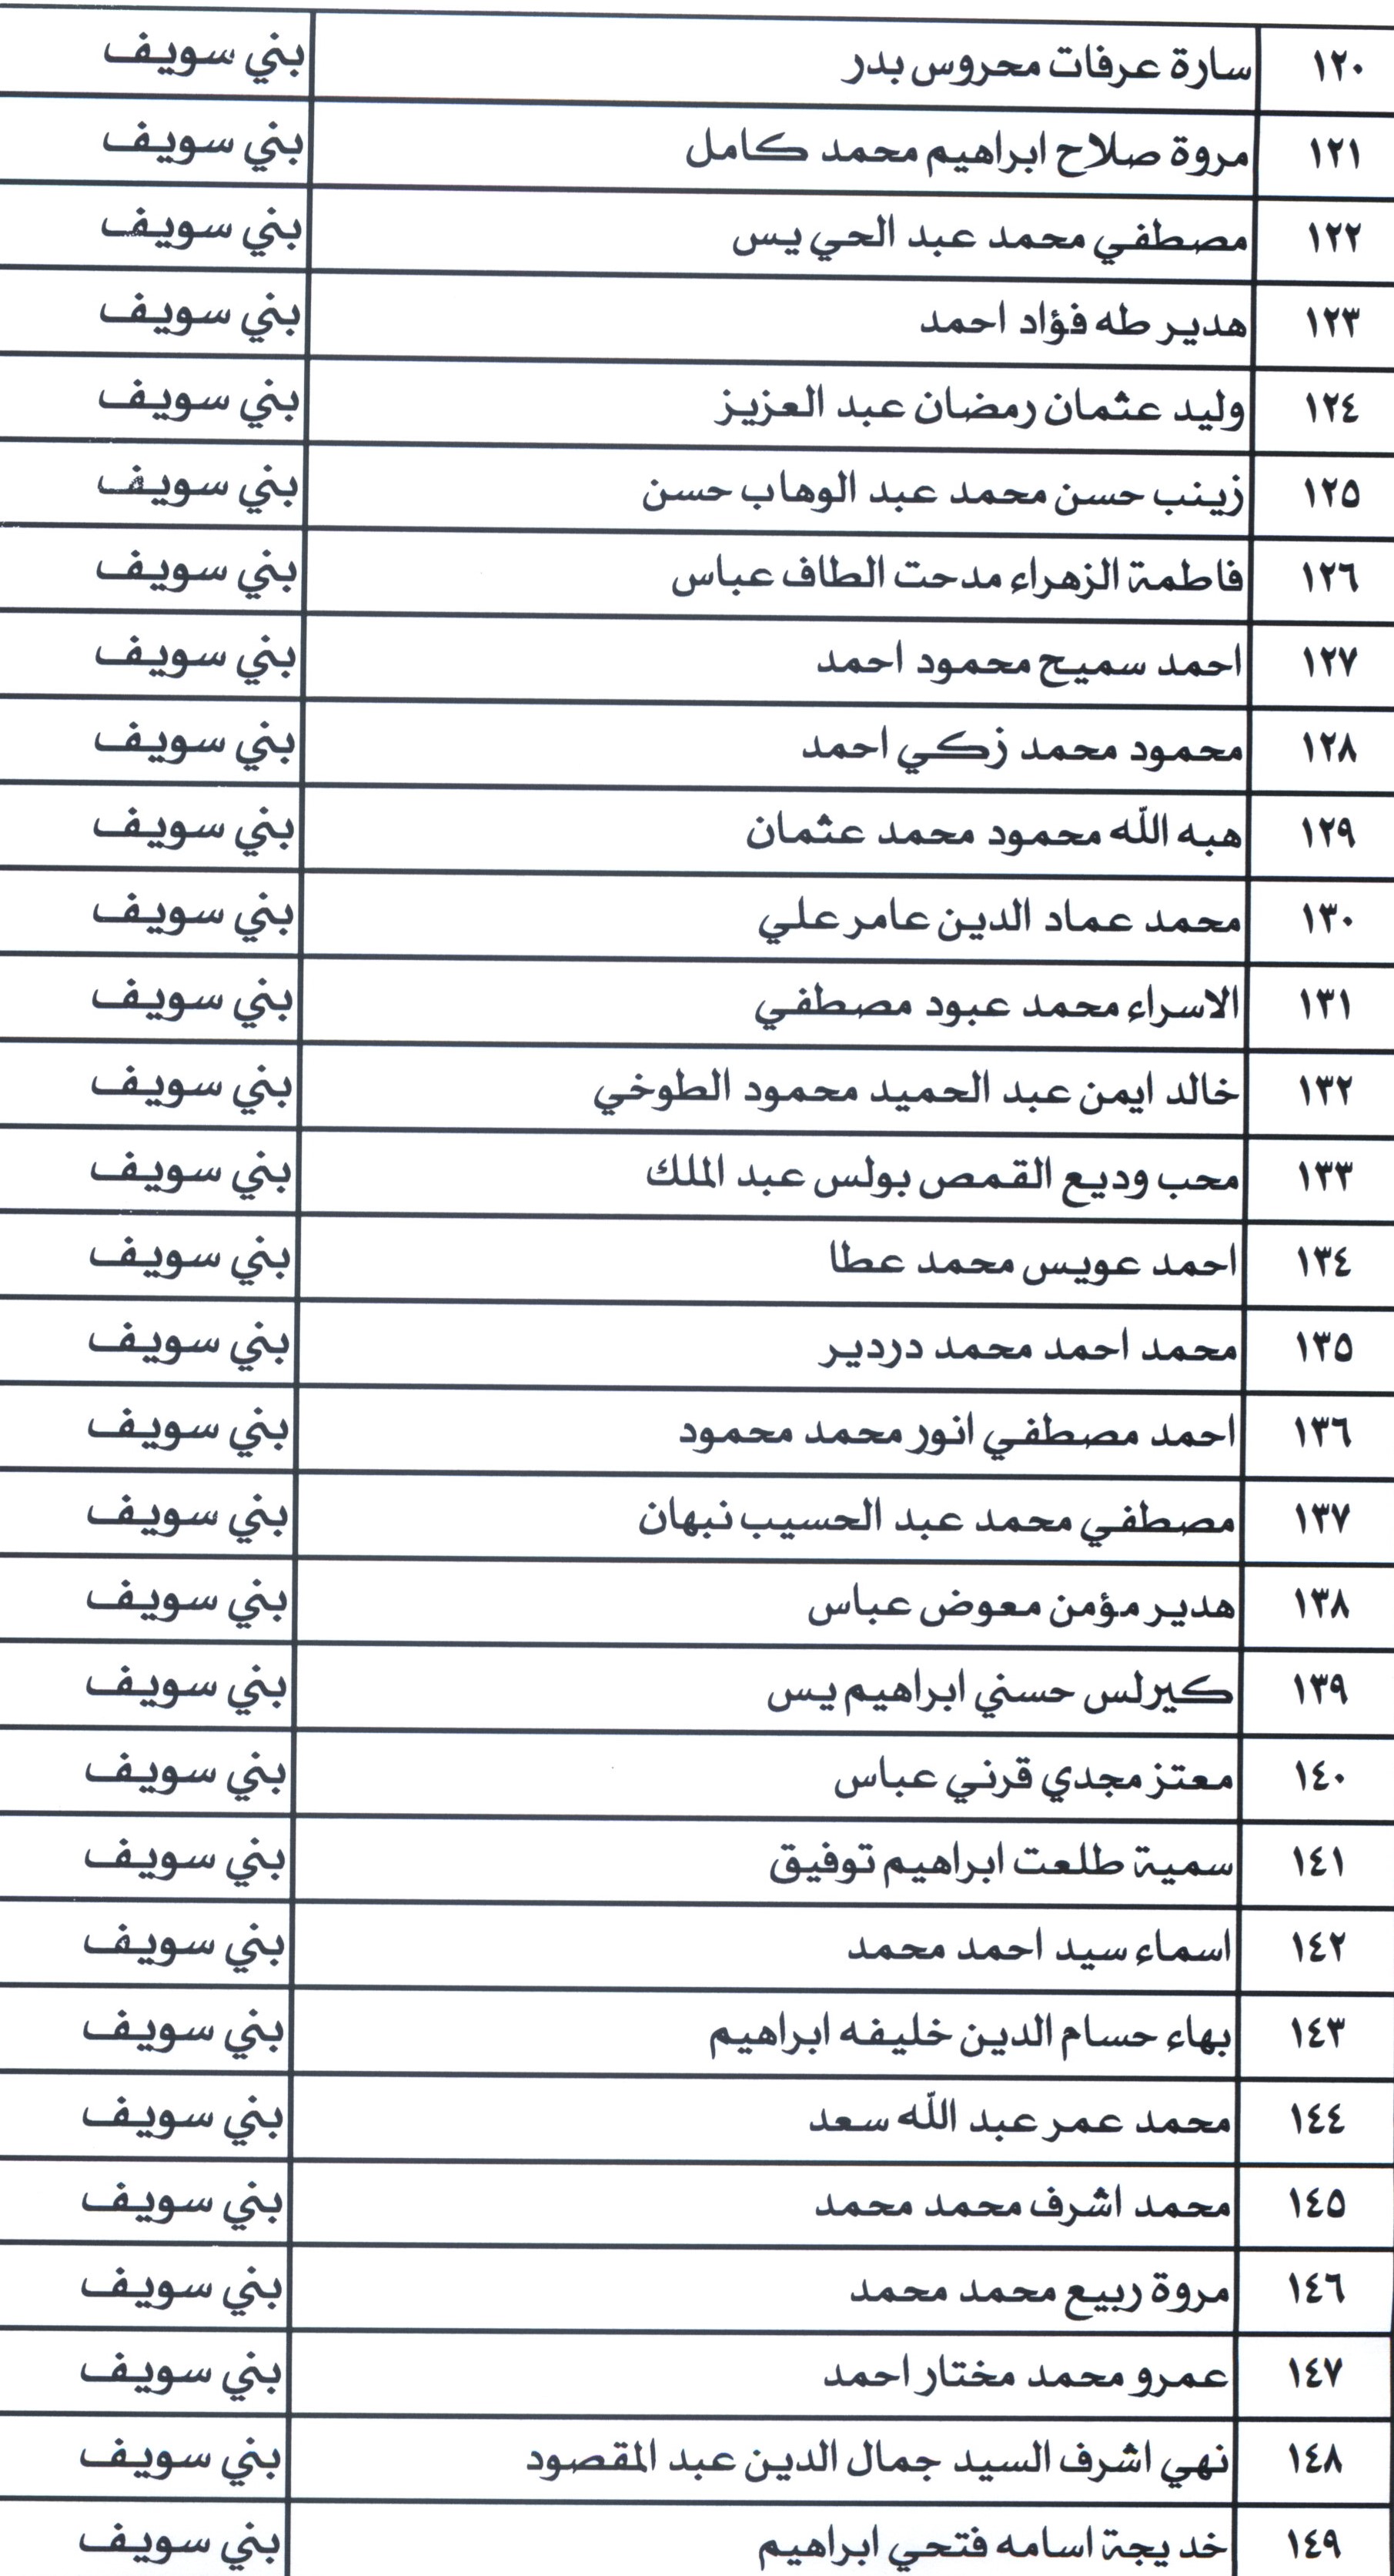 أسماء مرشحى شغل الوظائف ببمحافظة بنى سويف (4)